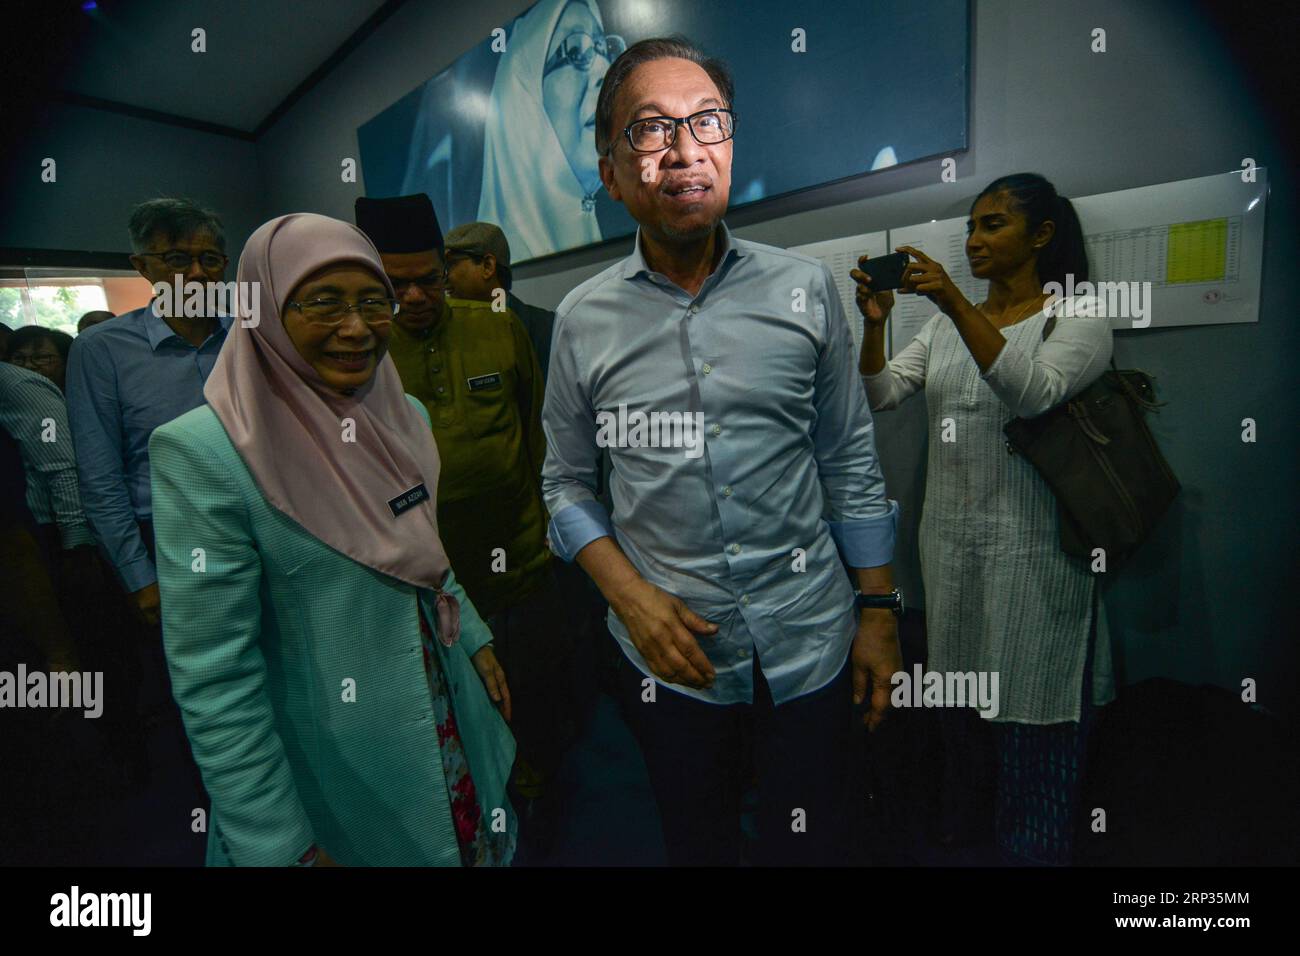 (180921) -- PETALING JAYA, 21. September 2018 -- Malaysischer ehemaliger stellvertretender Premierminister Anwar Ibrahim (C) kommt am 21. September 2018 zu einer Pressekonferenz in Petaling Jaya bei Kuala Lumpur, Malaysia. Der ehemalige stellvertretende Premierminister Anwar Ibrahim wurde am Freitag zum Kandidaten für eine Nachwahl für einen Parlamentssitz erklärt. (Zhf) MALAYSIA-PETALING JAYA-ANWAR IBRAHIM-KANDIDAT ChongxVoonxChung PUBLICATIONxNOTxINxCHN Stockfoto